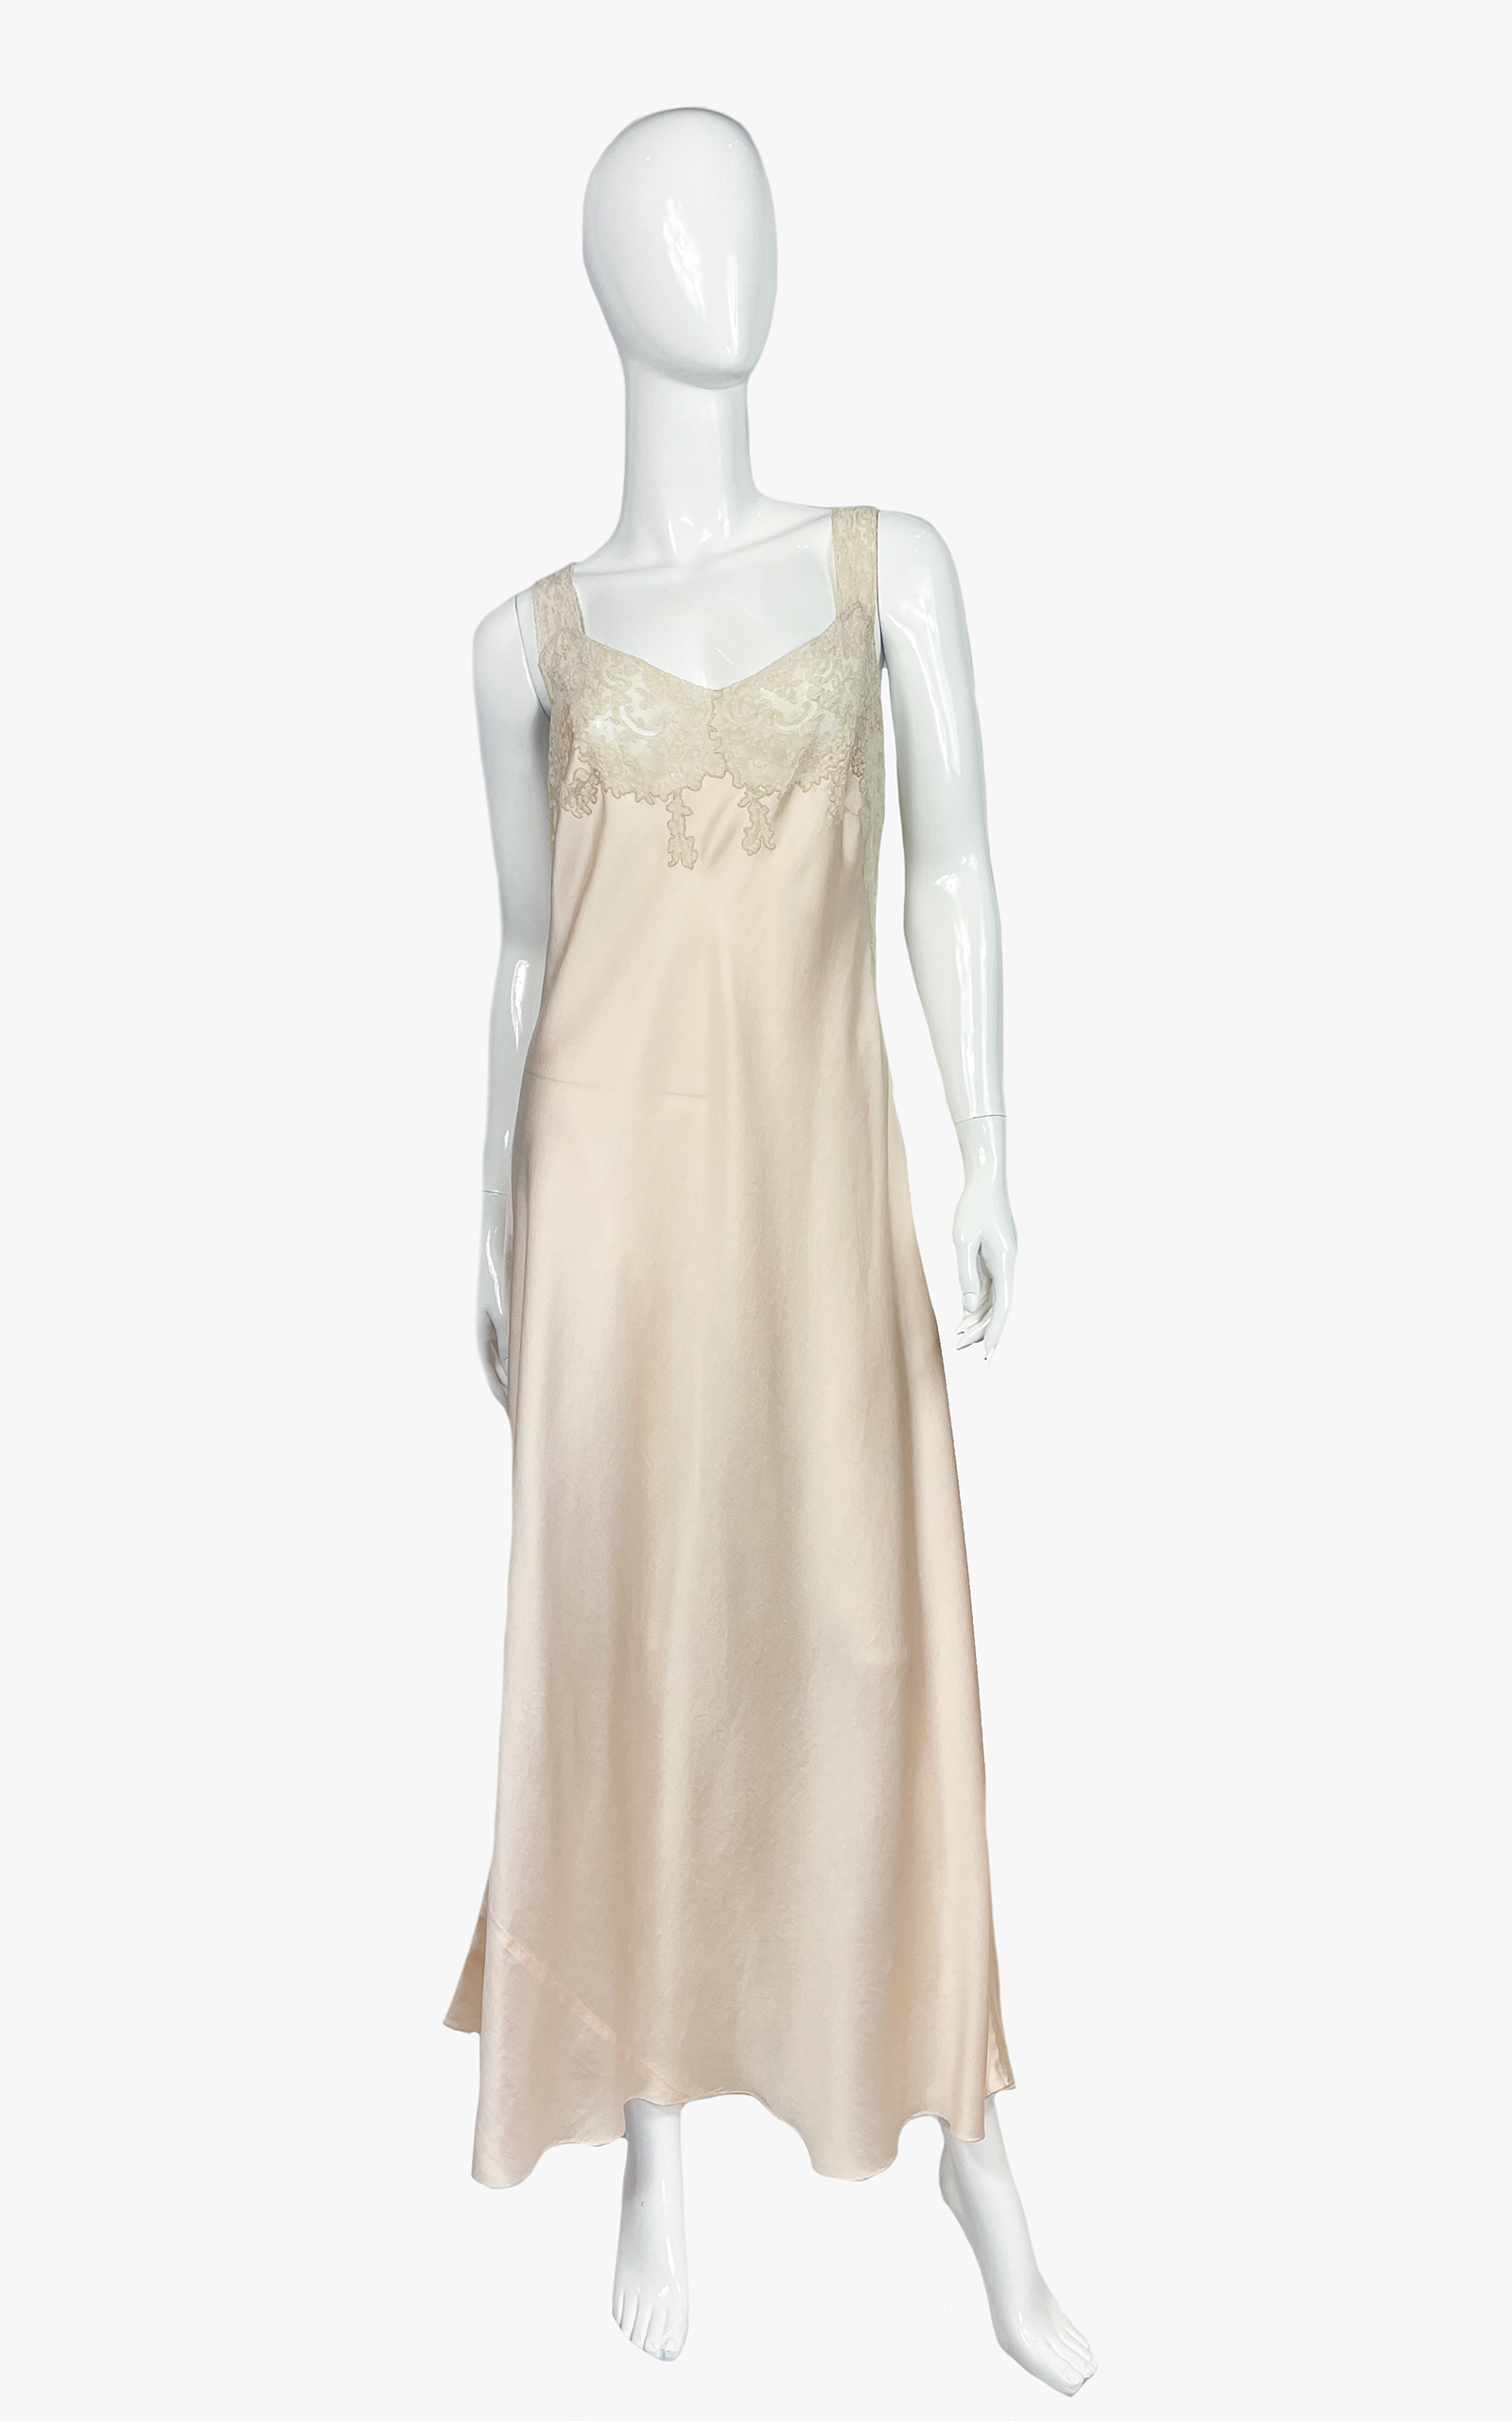 Vintage silk sleep dress, 1930s-